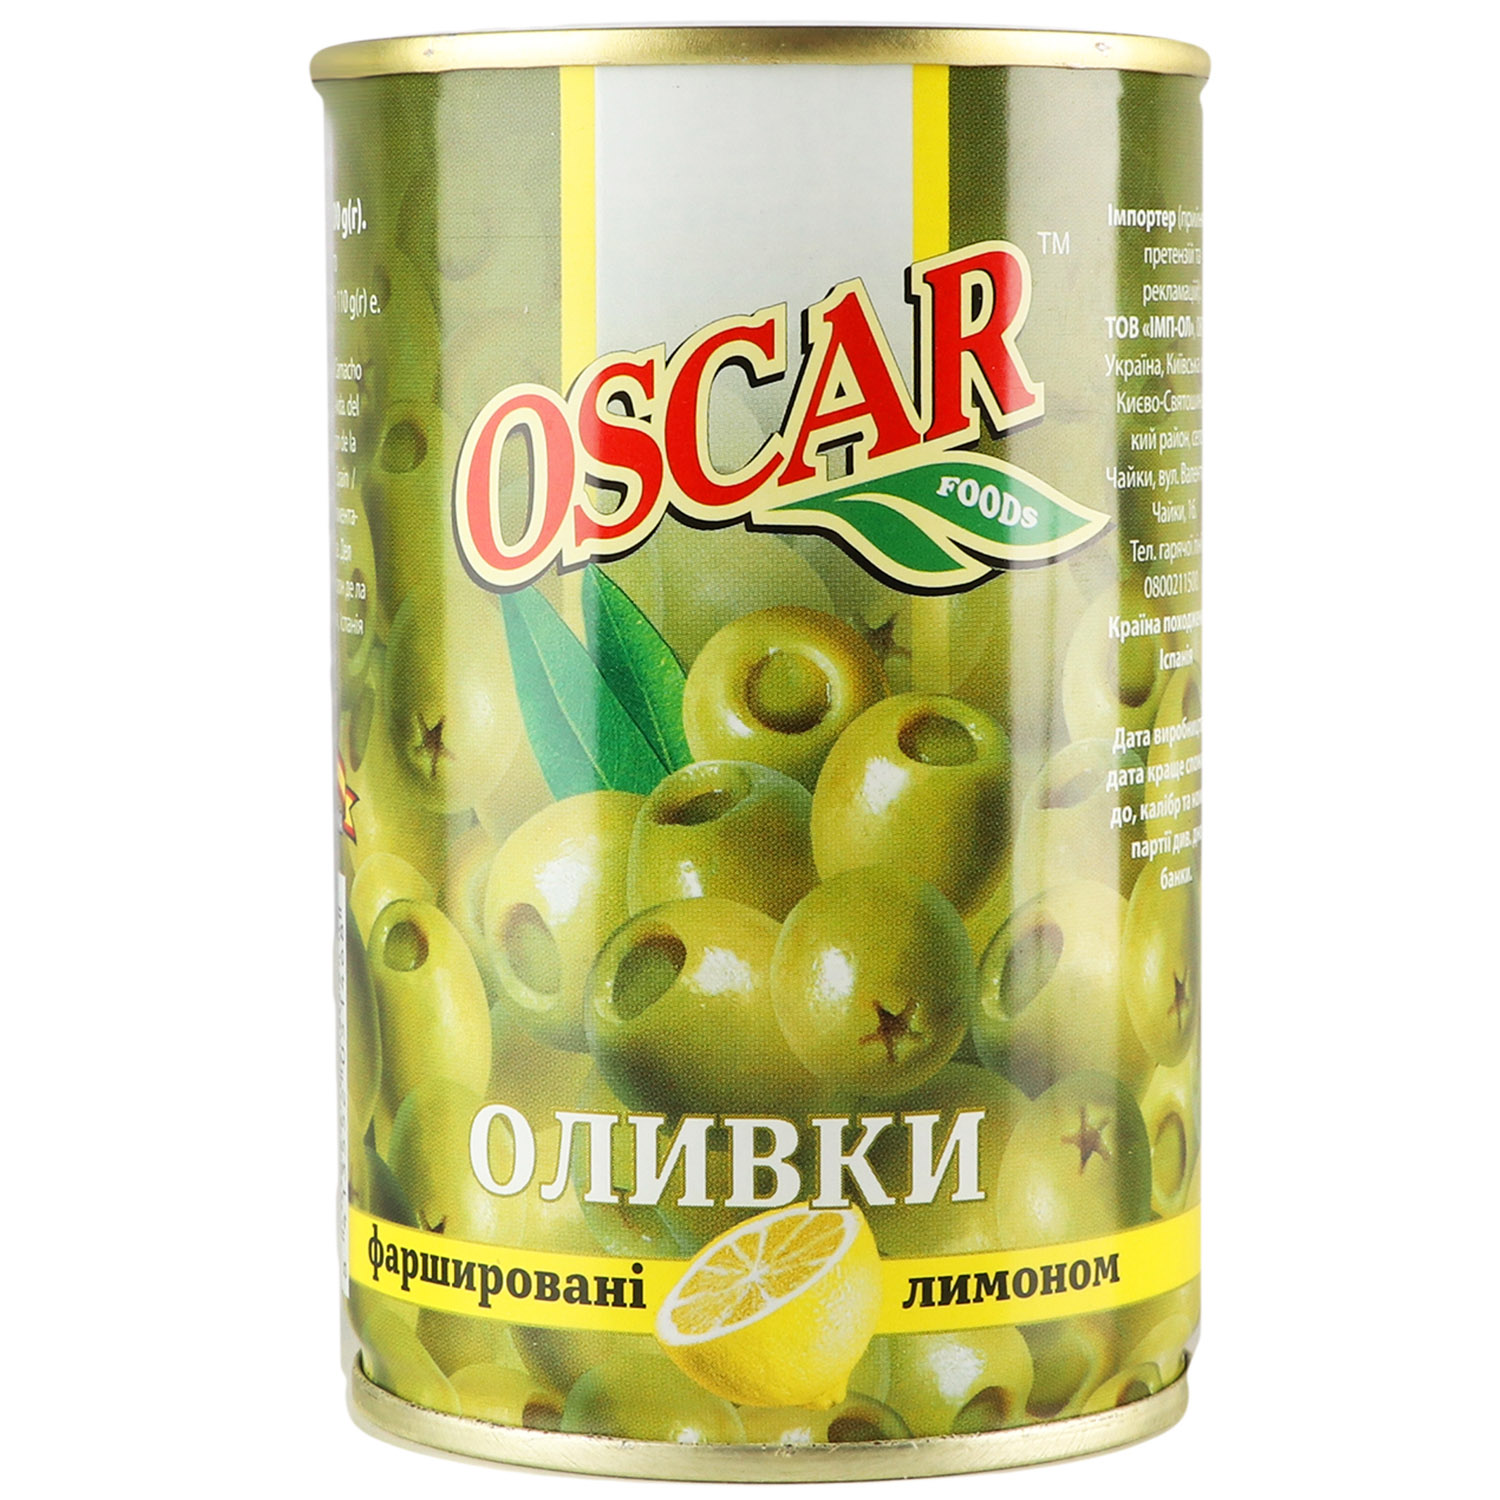 Оливки Oscar фаршировані лимоном 300 г (914657) - фото 1